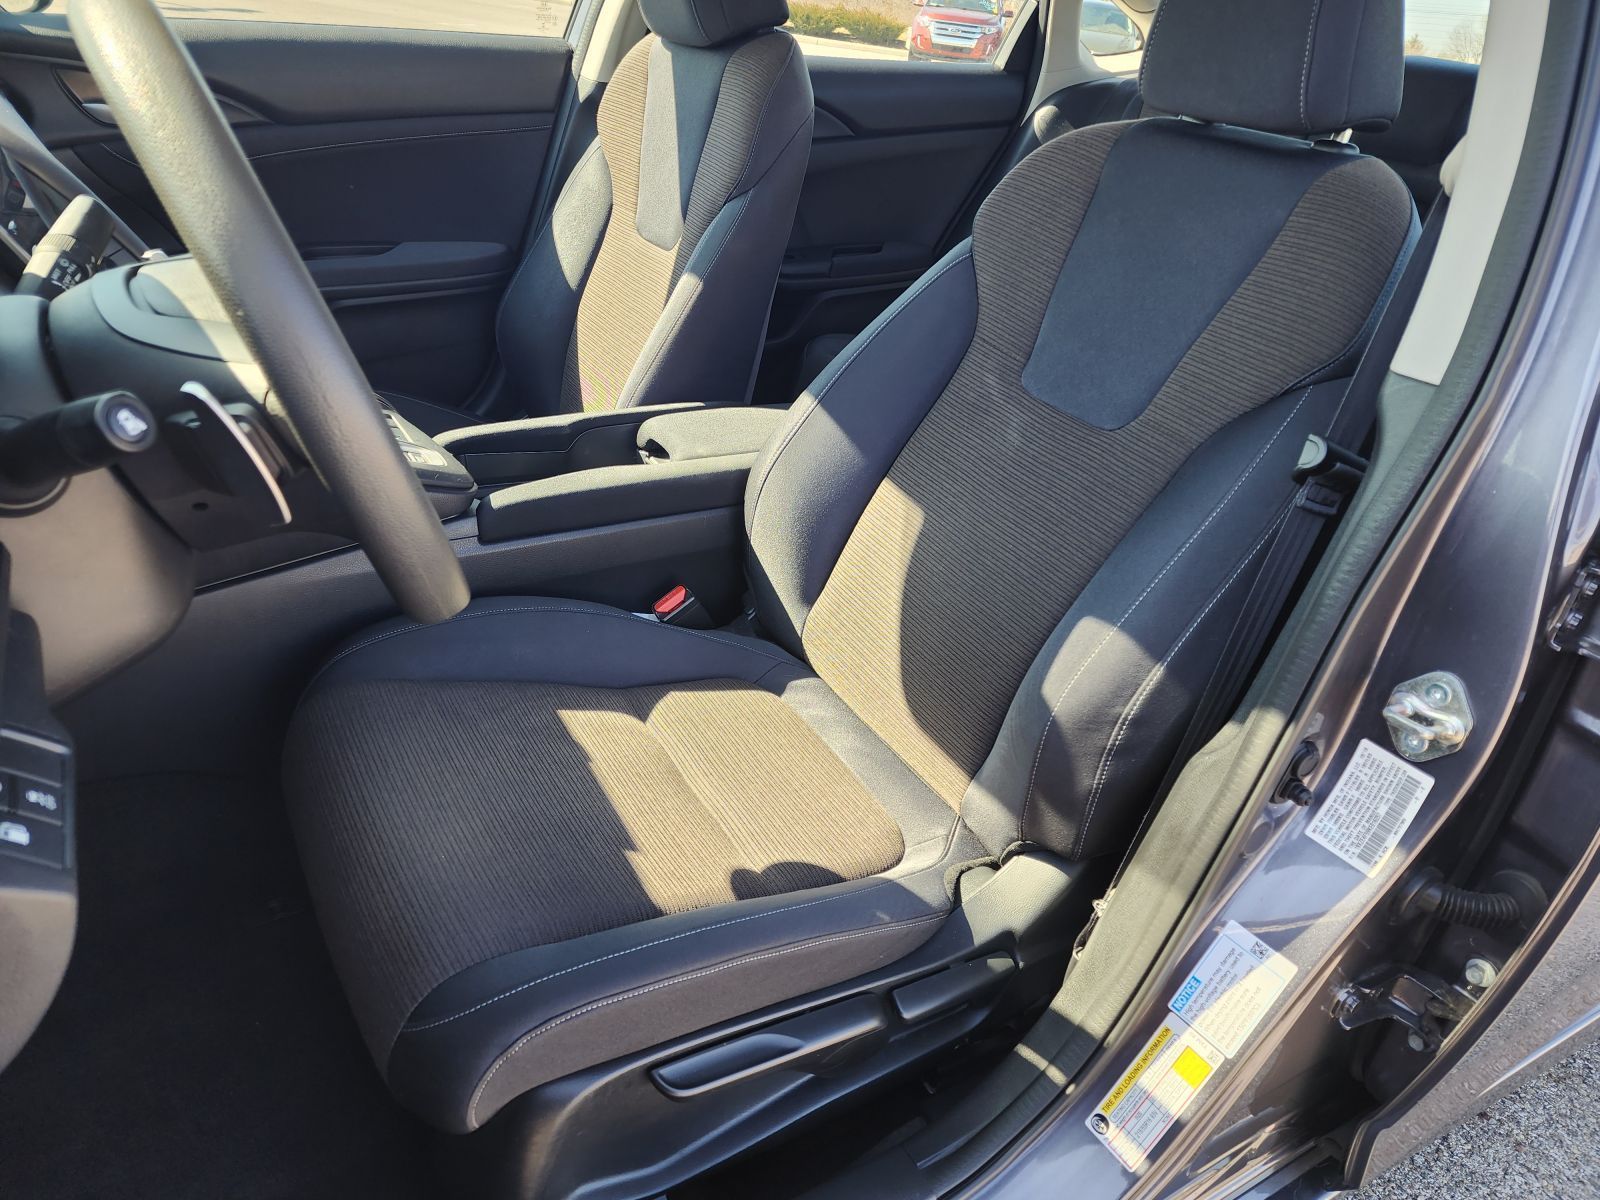 Used, 2019 Honda Insight EX, Gray, P0478-19